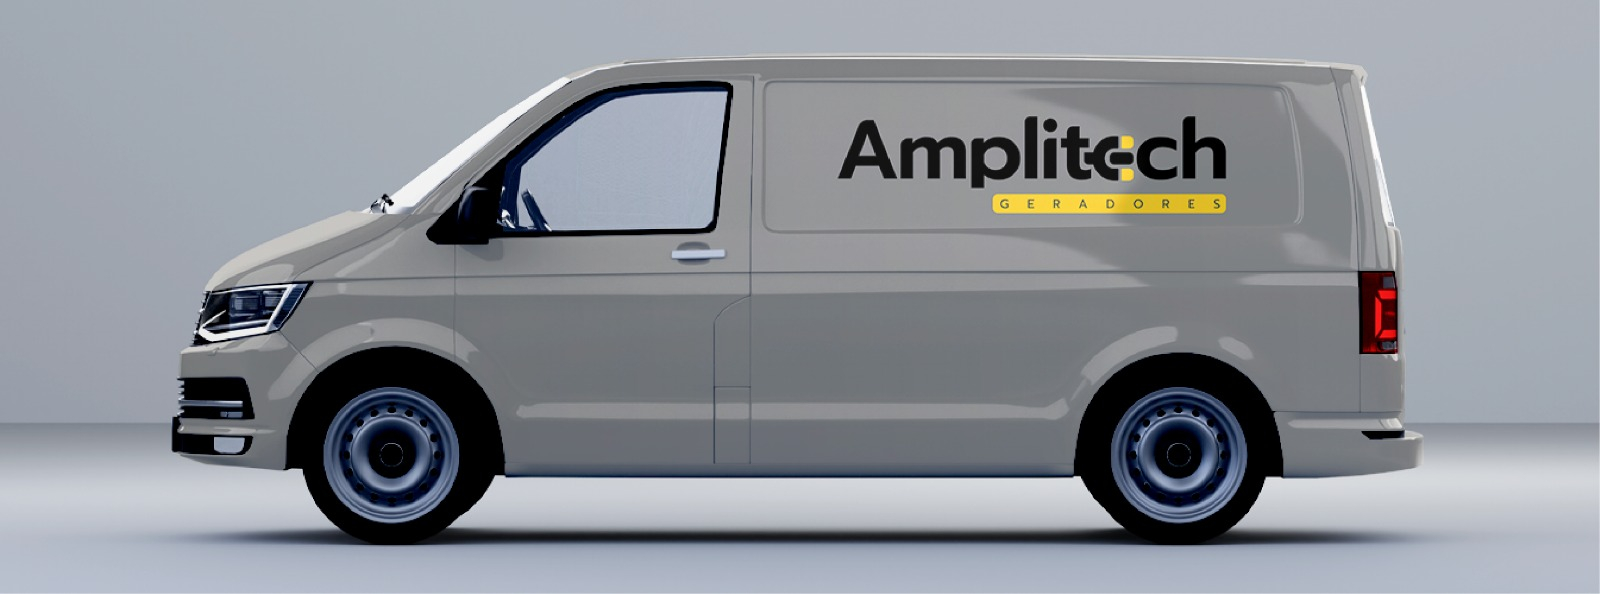 amplitech-banner2